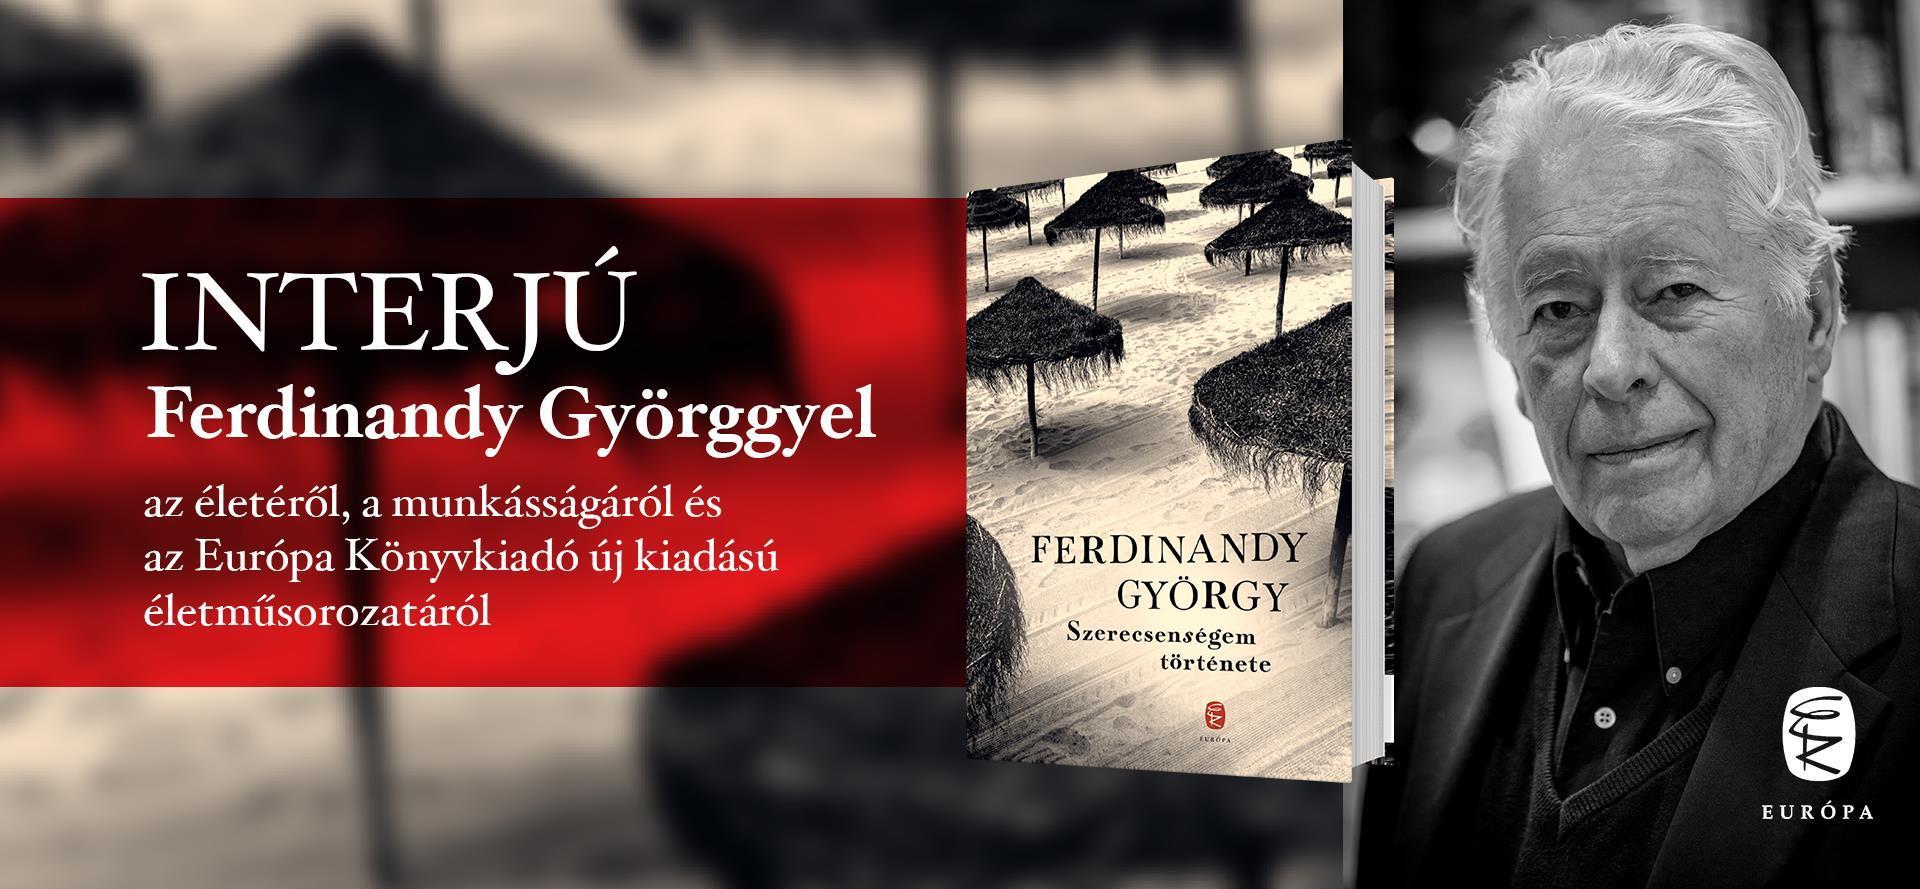 Interjú Ferdinandy György íróval, a Szerecsenségem története szerzőjével